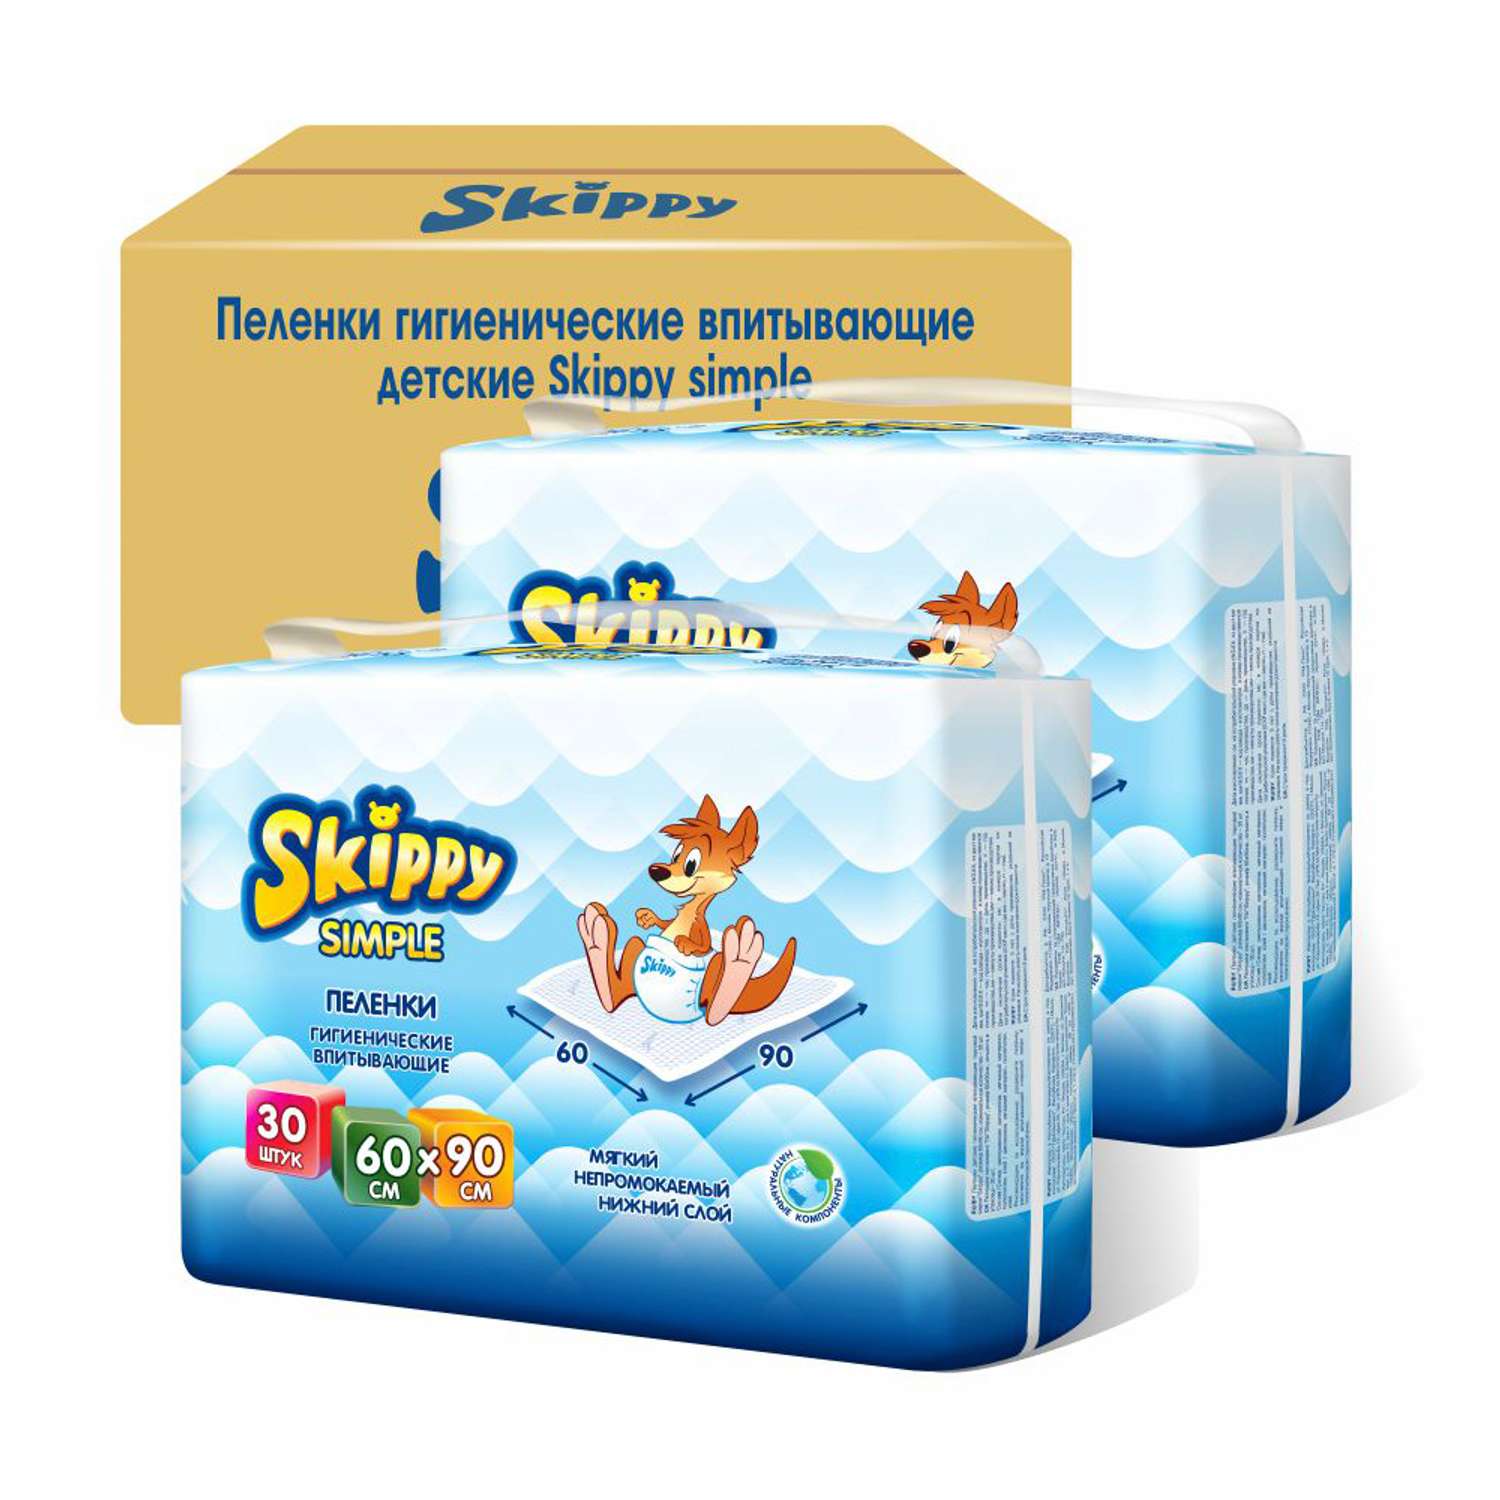 Пеленки детские гигиенические Skippy впитывающие Simple 60x90 см 2 упаковки по 30 шт 8039 - фото 2